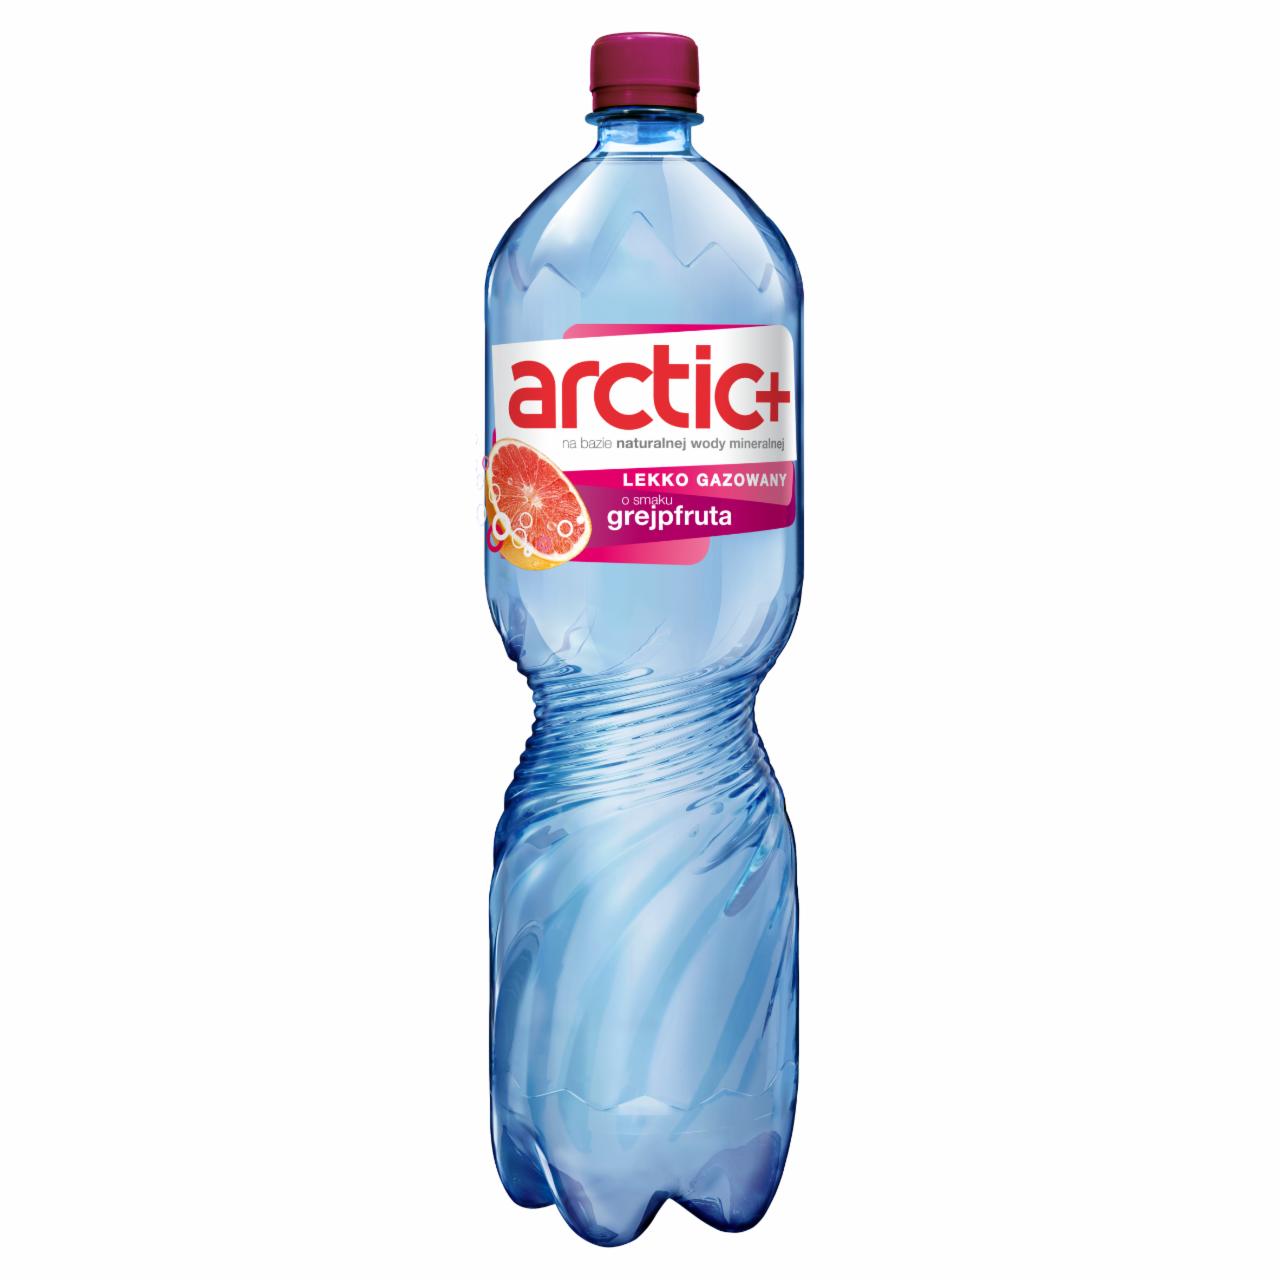 Zdjęcia - Arctic Plus Napój lekko gazowany o smaku grejpfruta 1,5 l